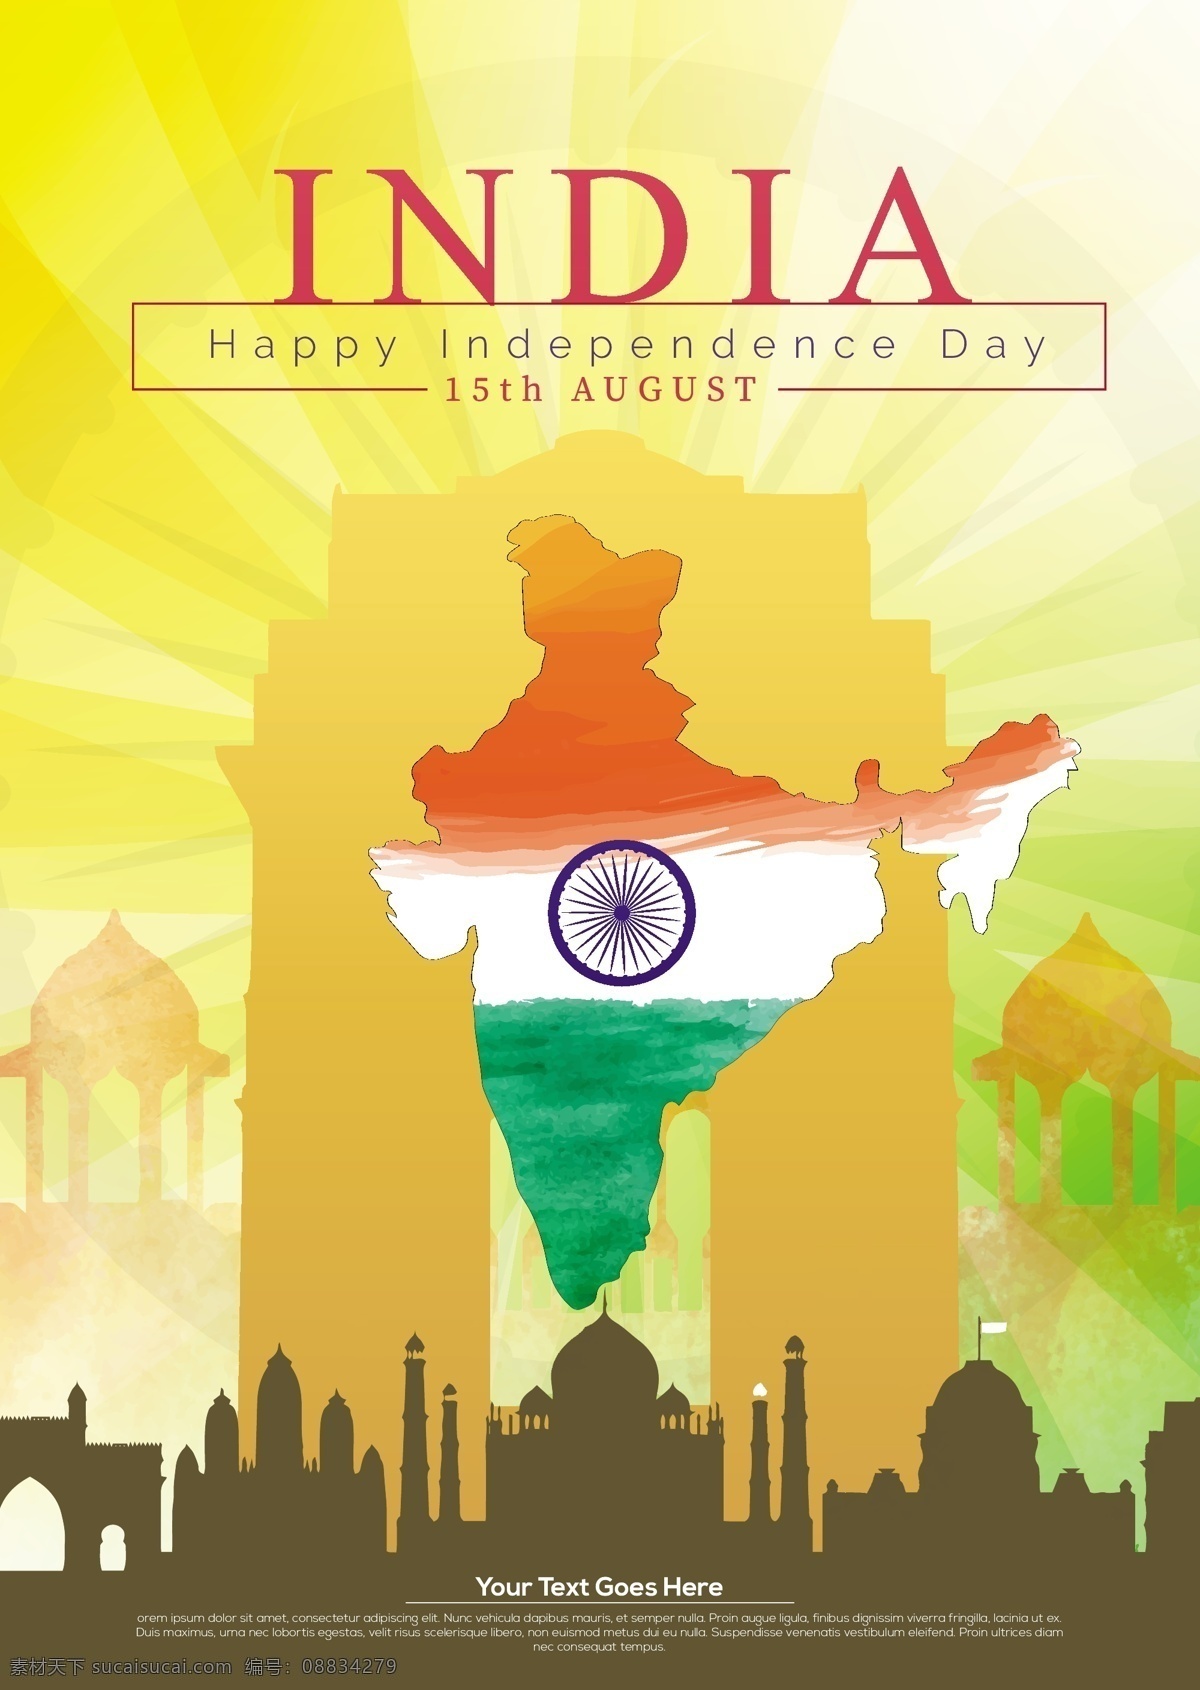 印度 独立日 节日 海报 第15 八月 独立 天 节 印度人 旗 国民 国家 假日 印度斯坦 向量 艺术 艺术品 传单